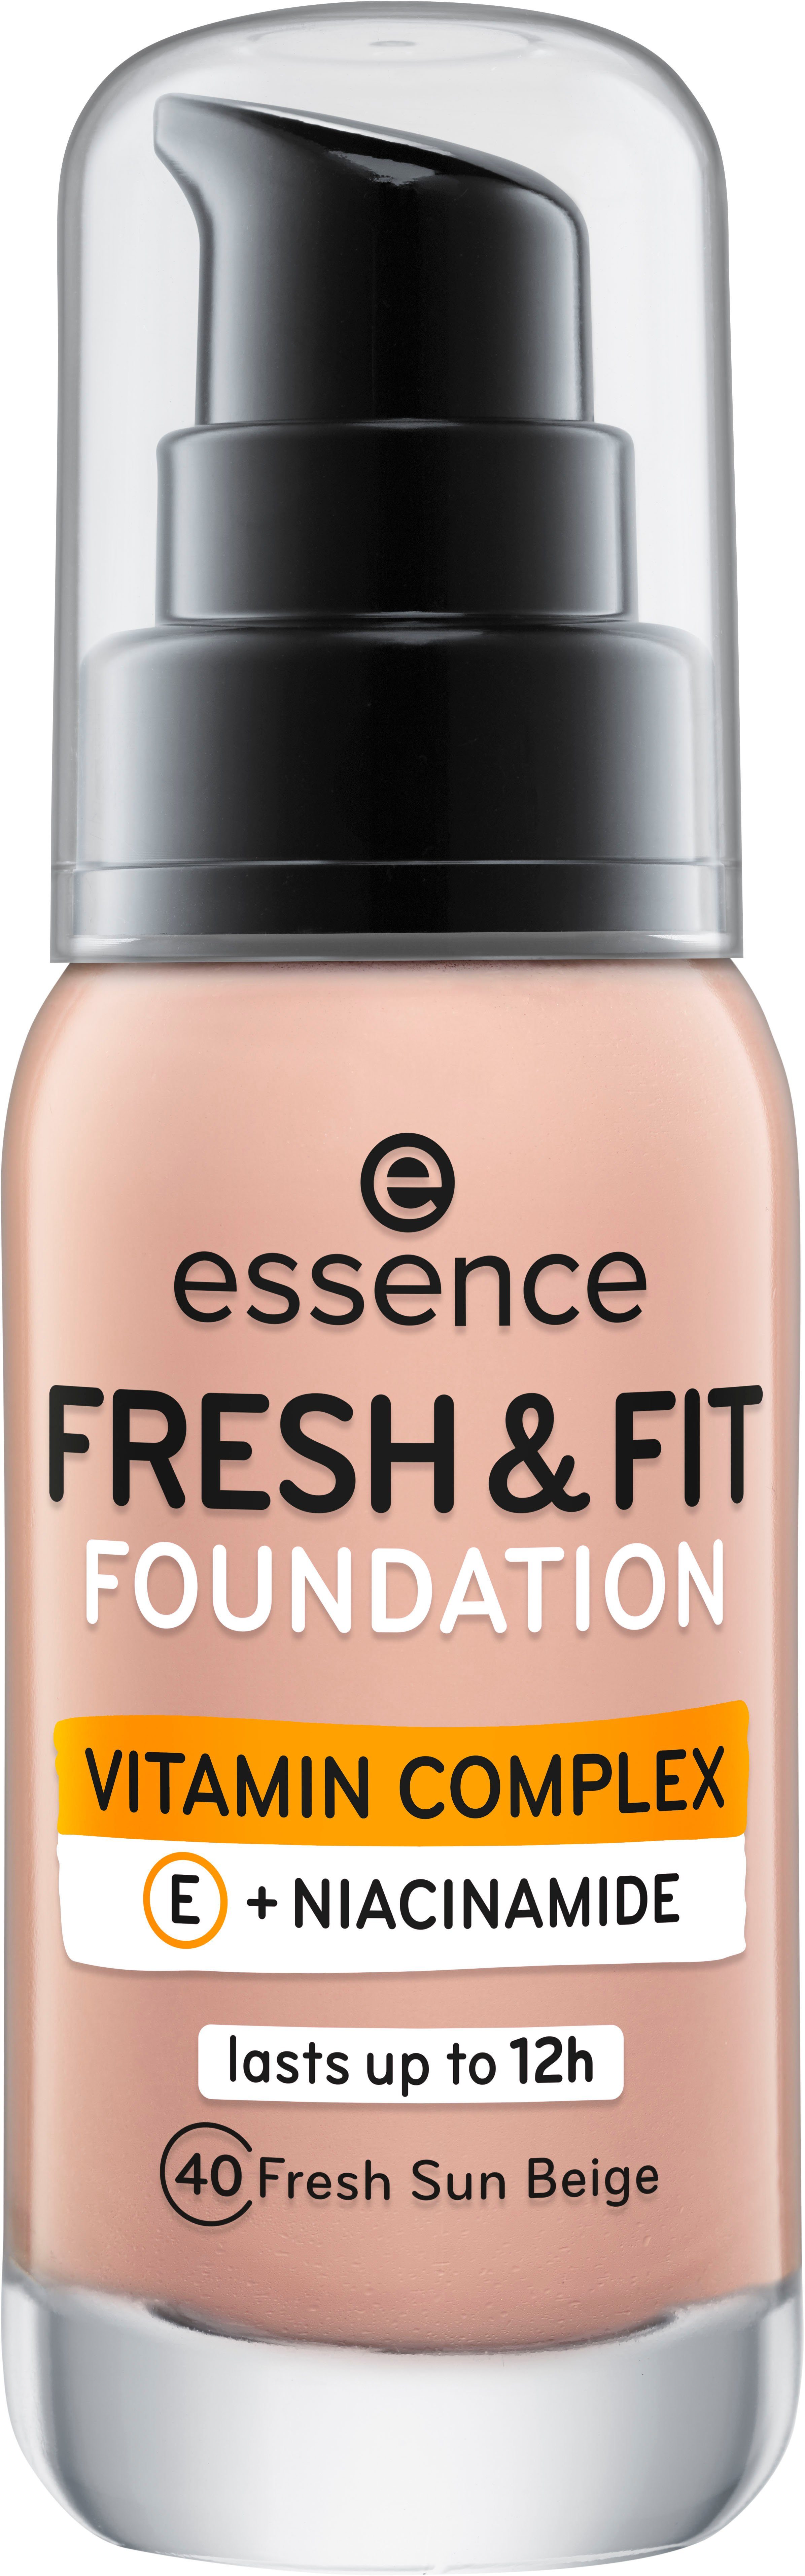 Foundation FRESH fresh & sun FOUNDATION, Essence 3-tlg. FIT beige